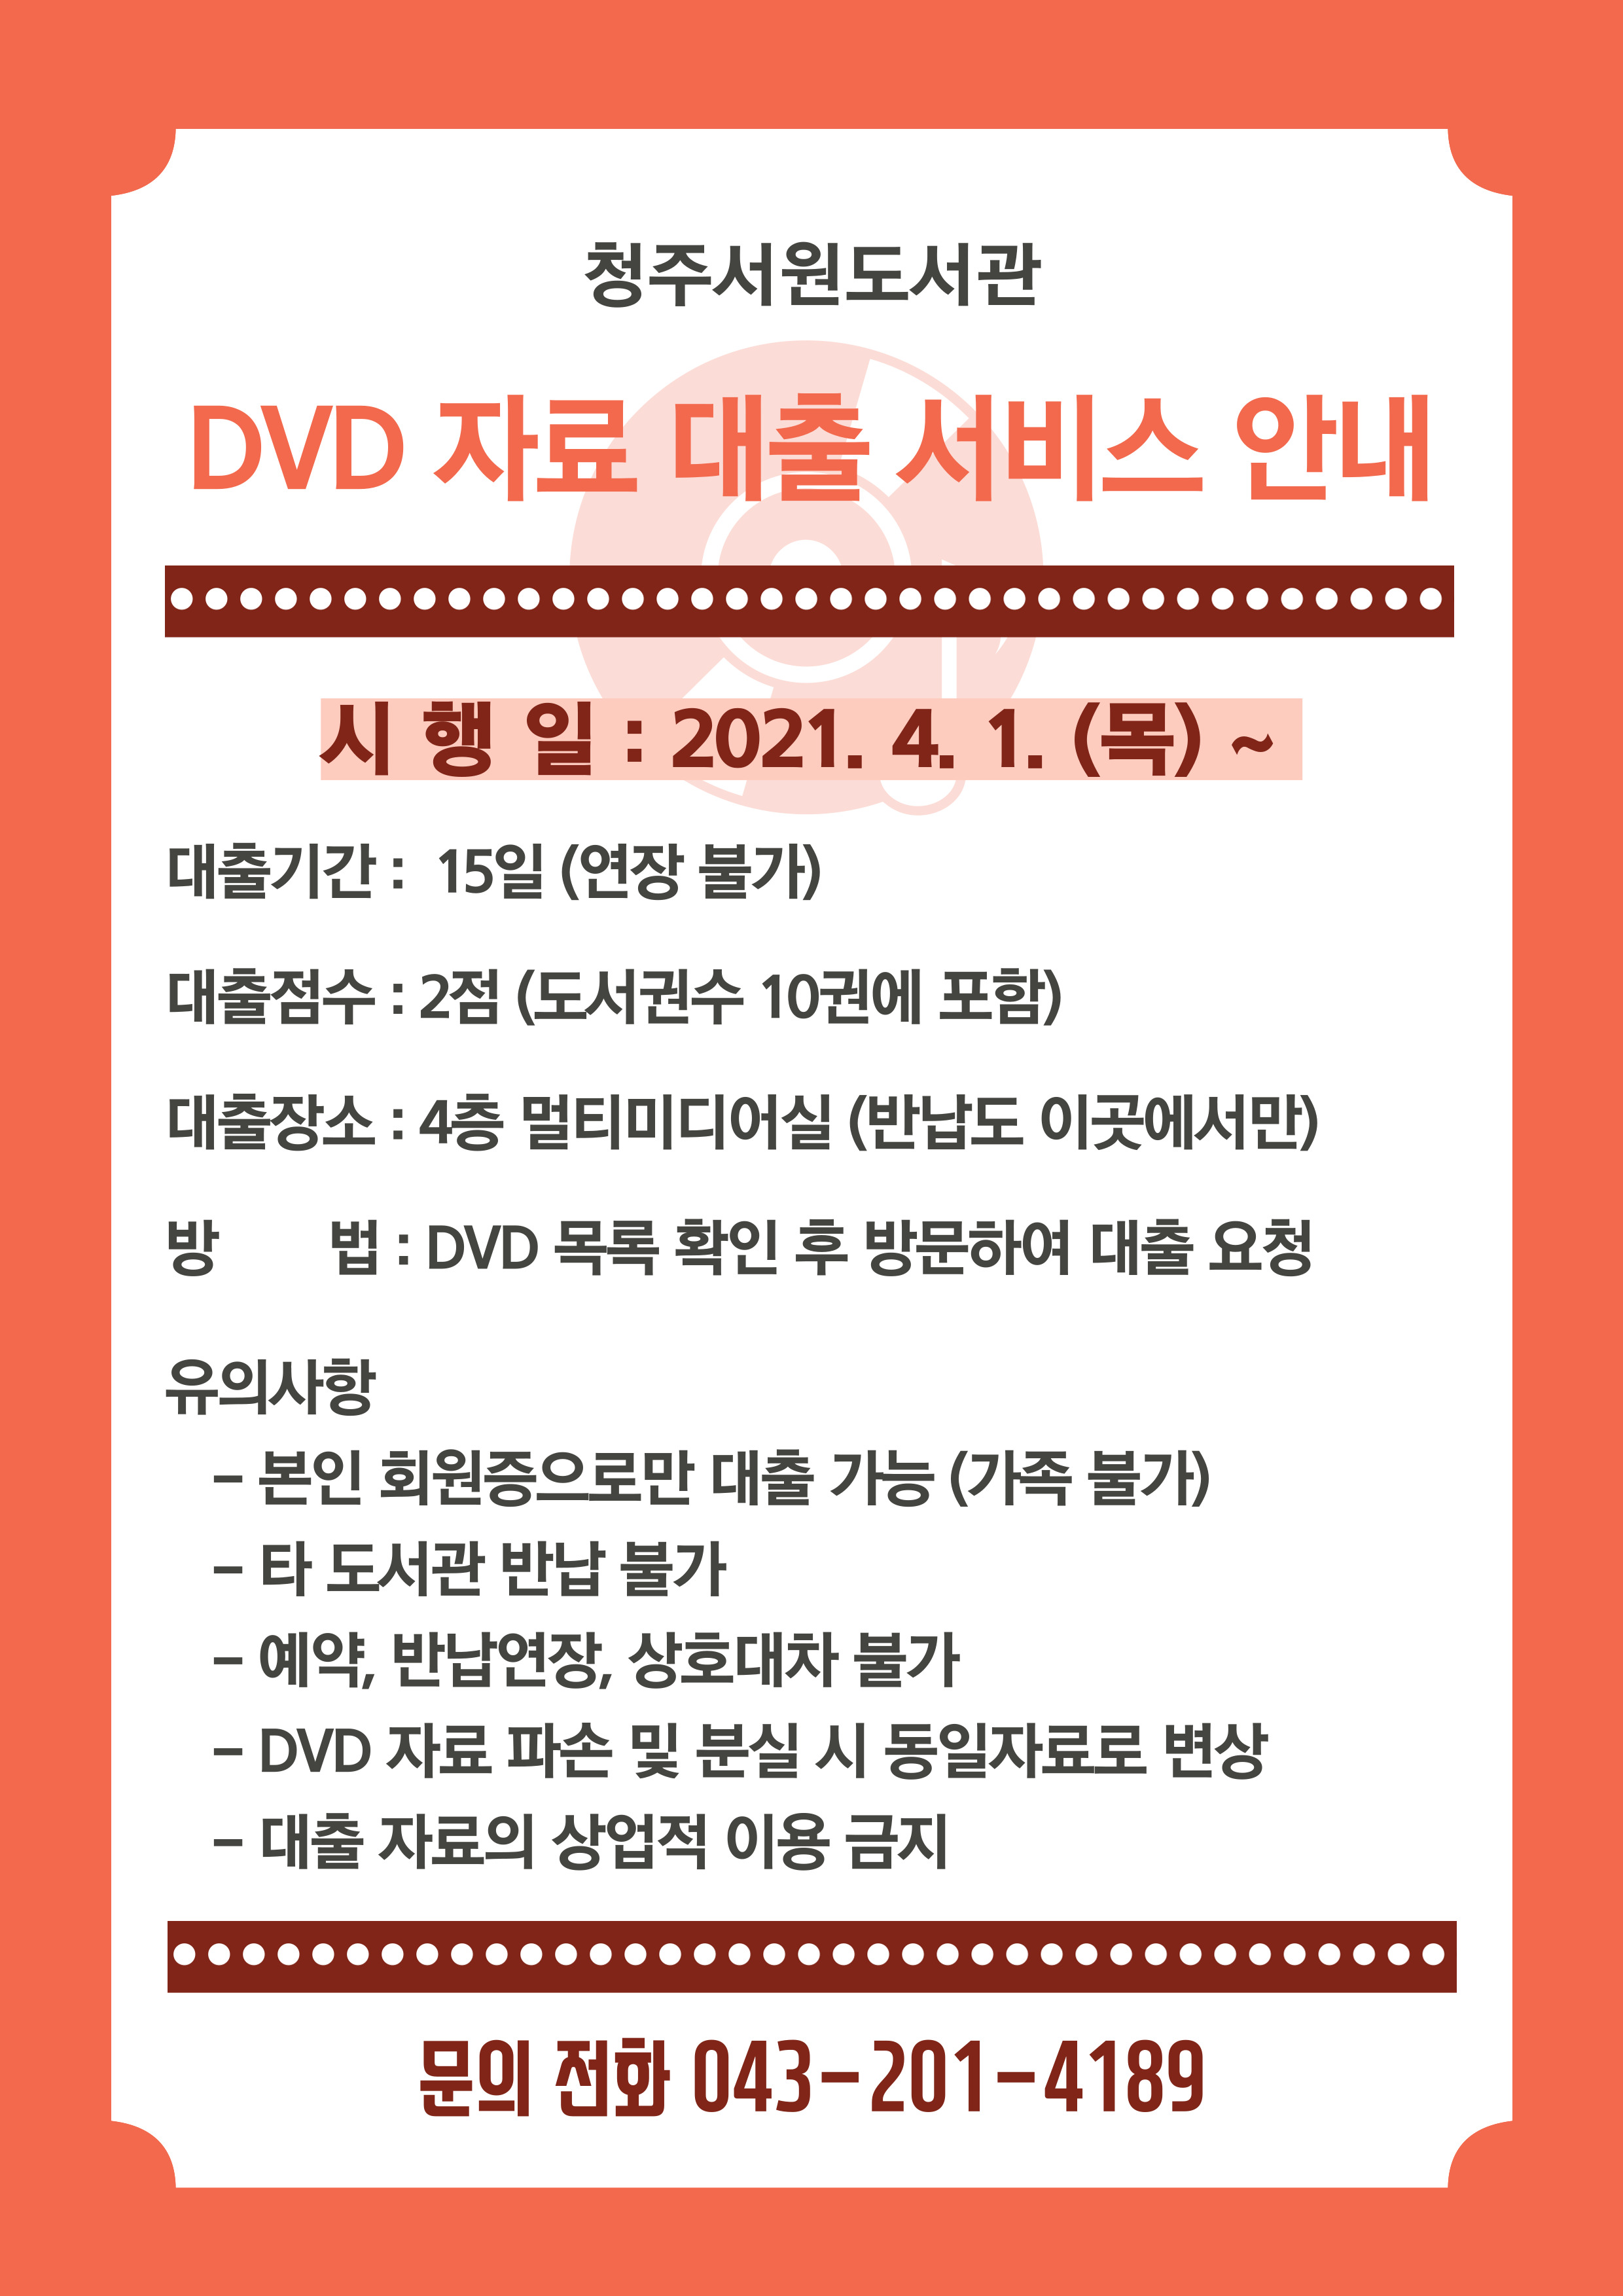 [청주서원도서관] DVD자료 대출 서비스 시행 안내